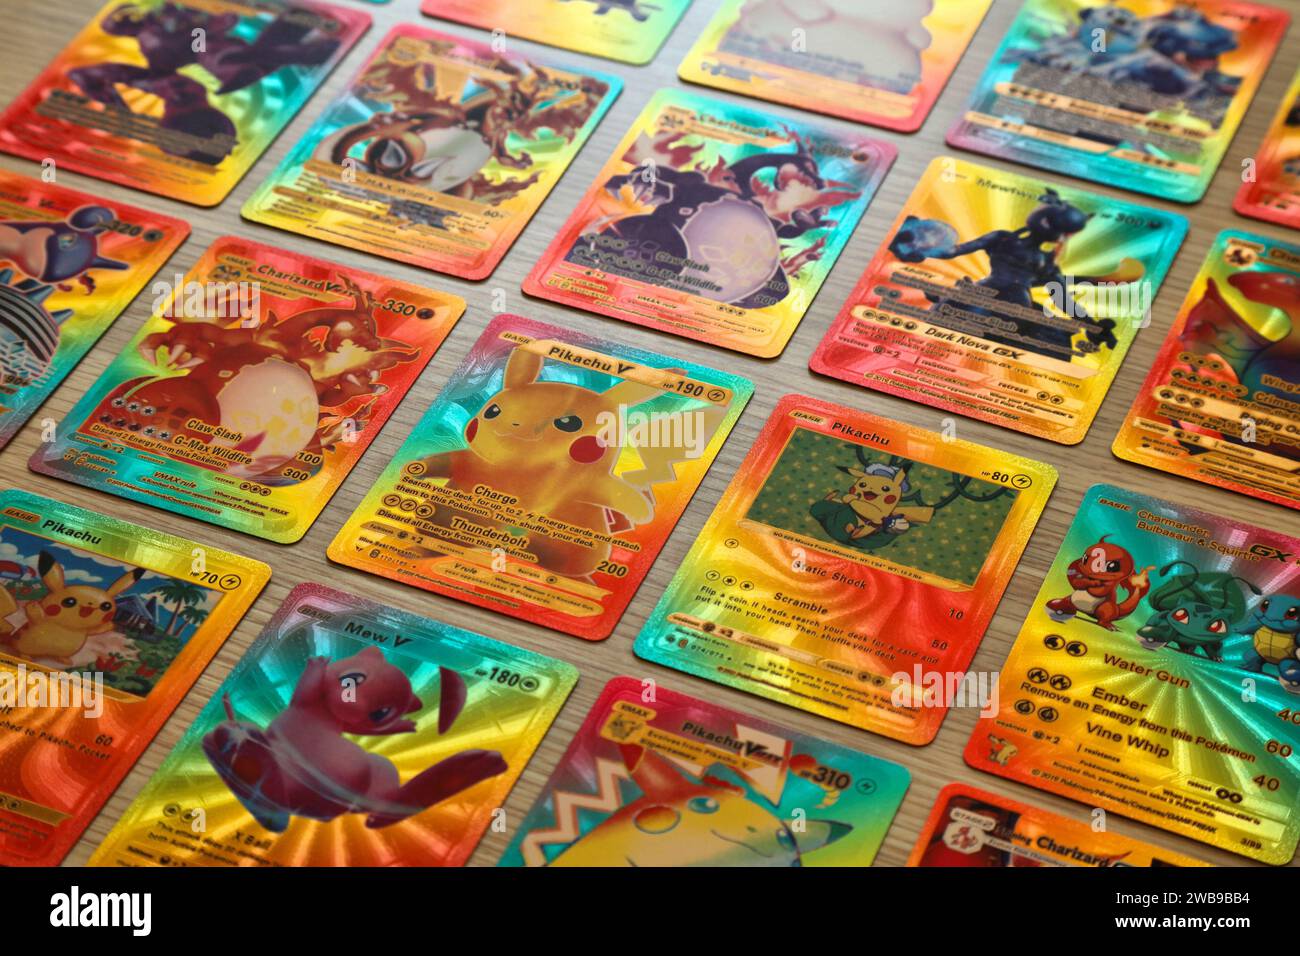 Cartes Pokemon métal or argent anglais français Vmax GX carte d'énergie  Charizard Pikachu Collection Rare